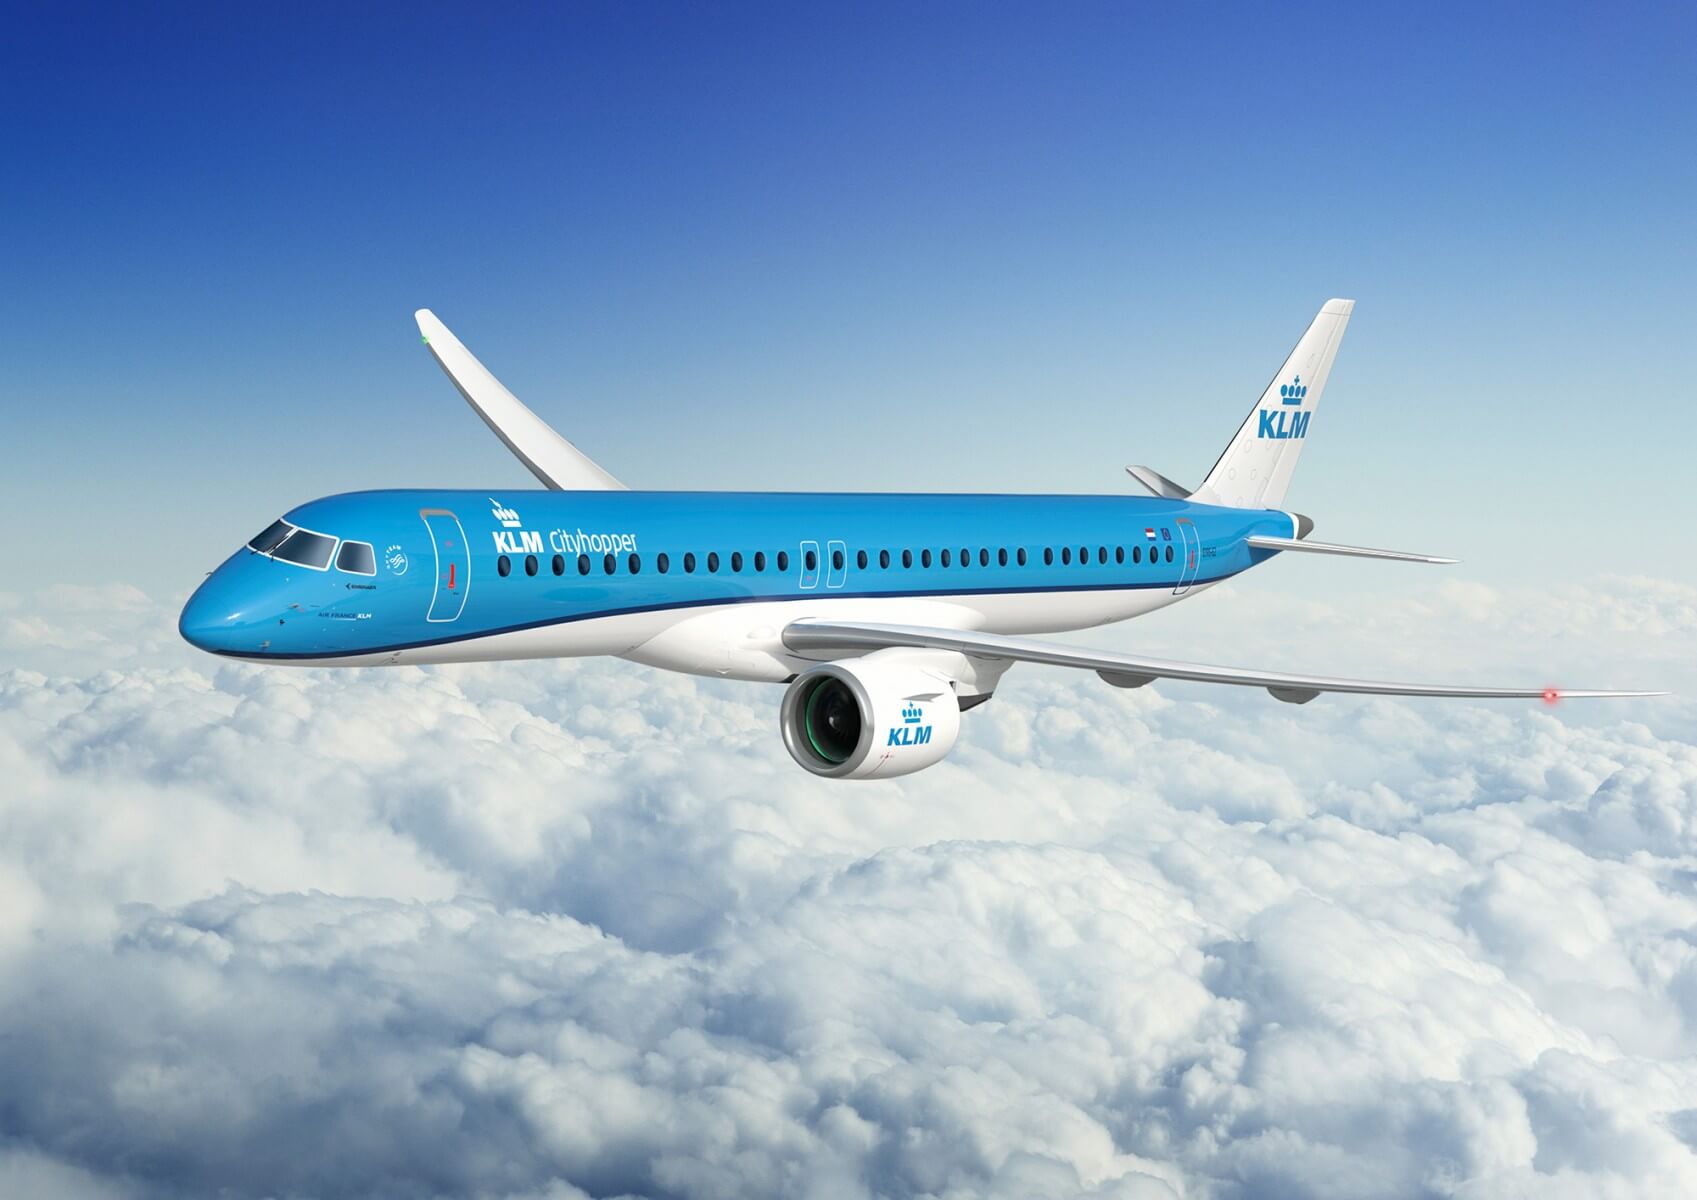 EmbraAer Jet for KLM